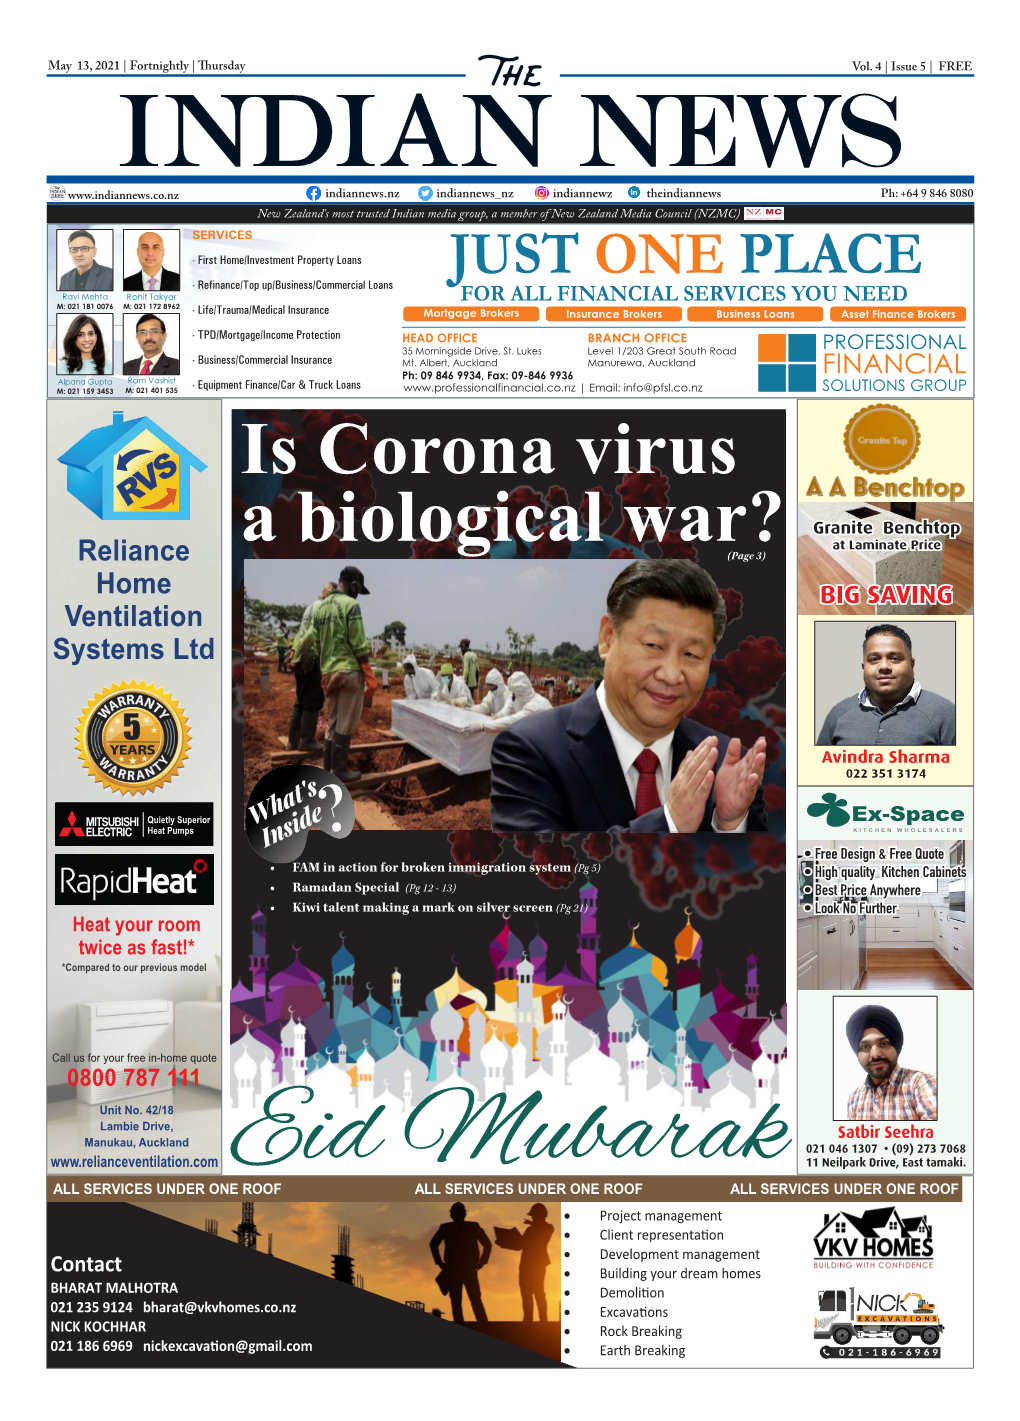 Is Corona Virus a Biological War? • Yugal Parashar